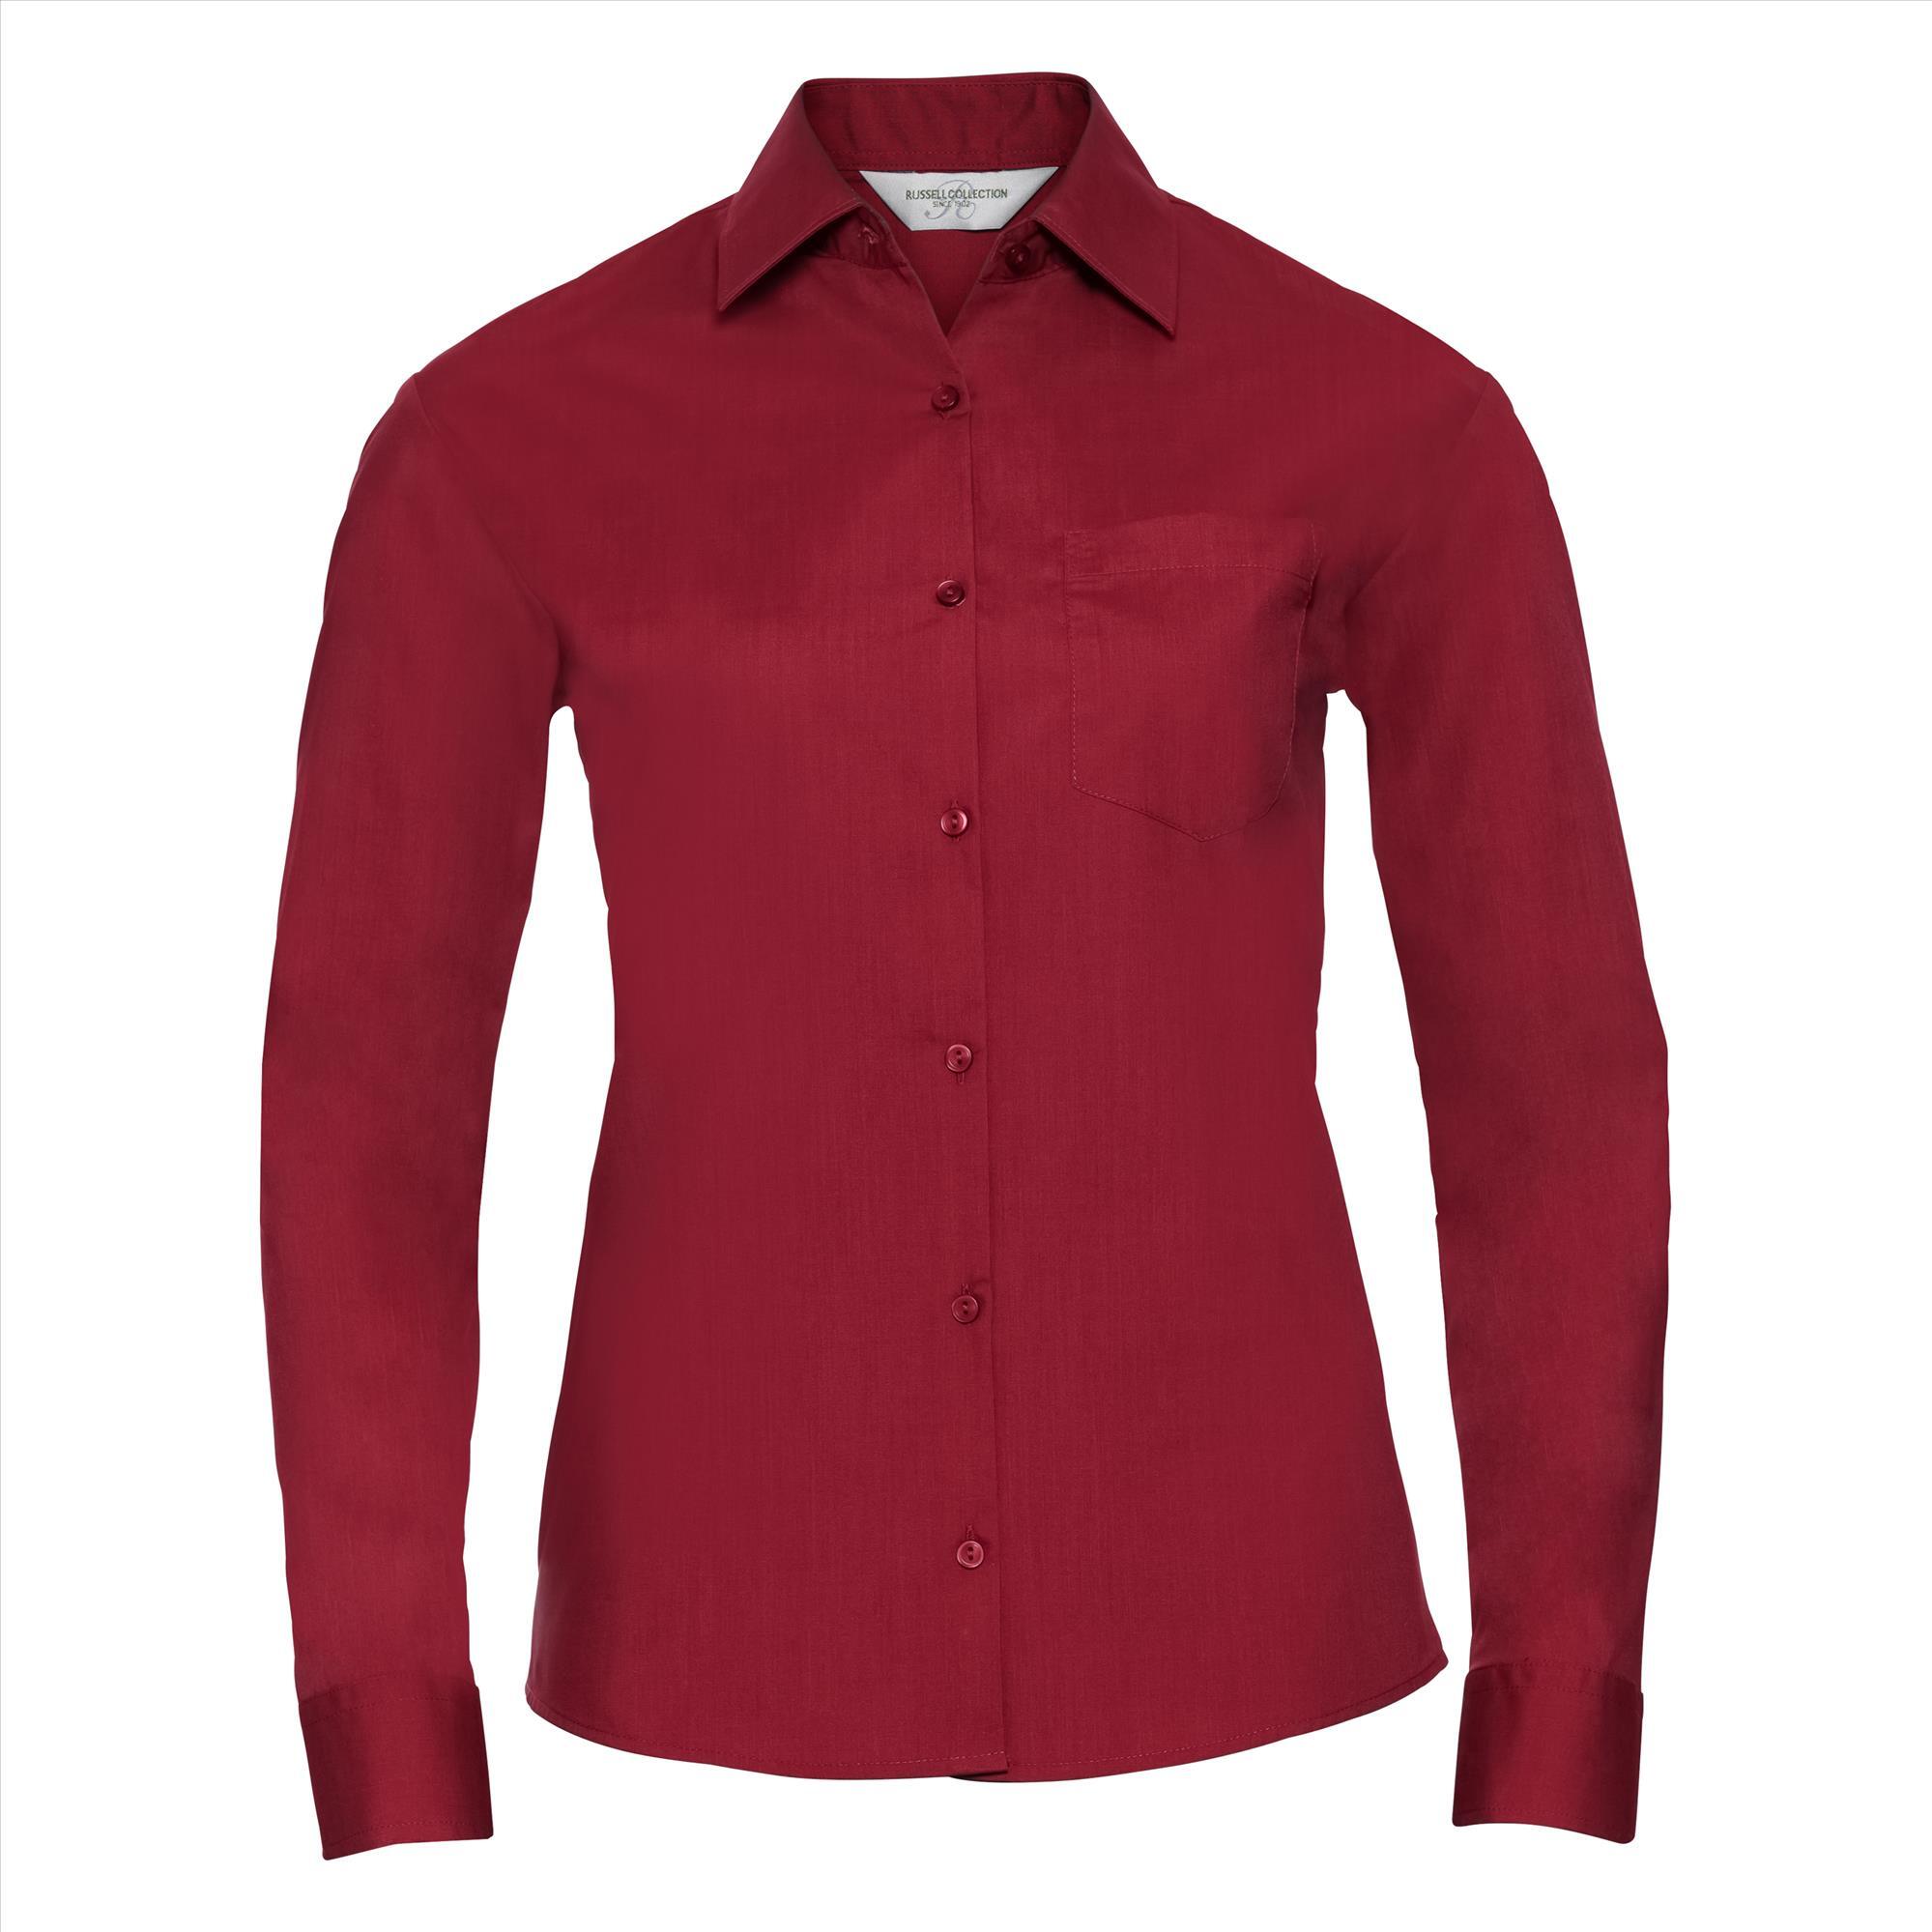 Dames blouse met klassieke kraag rood perfect voor bedrukking bedrijfslogo